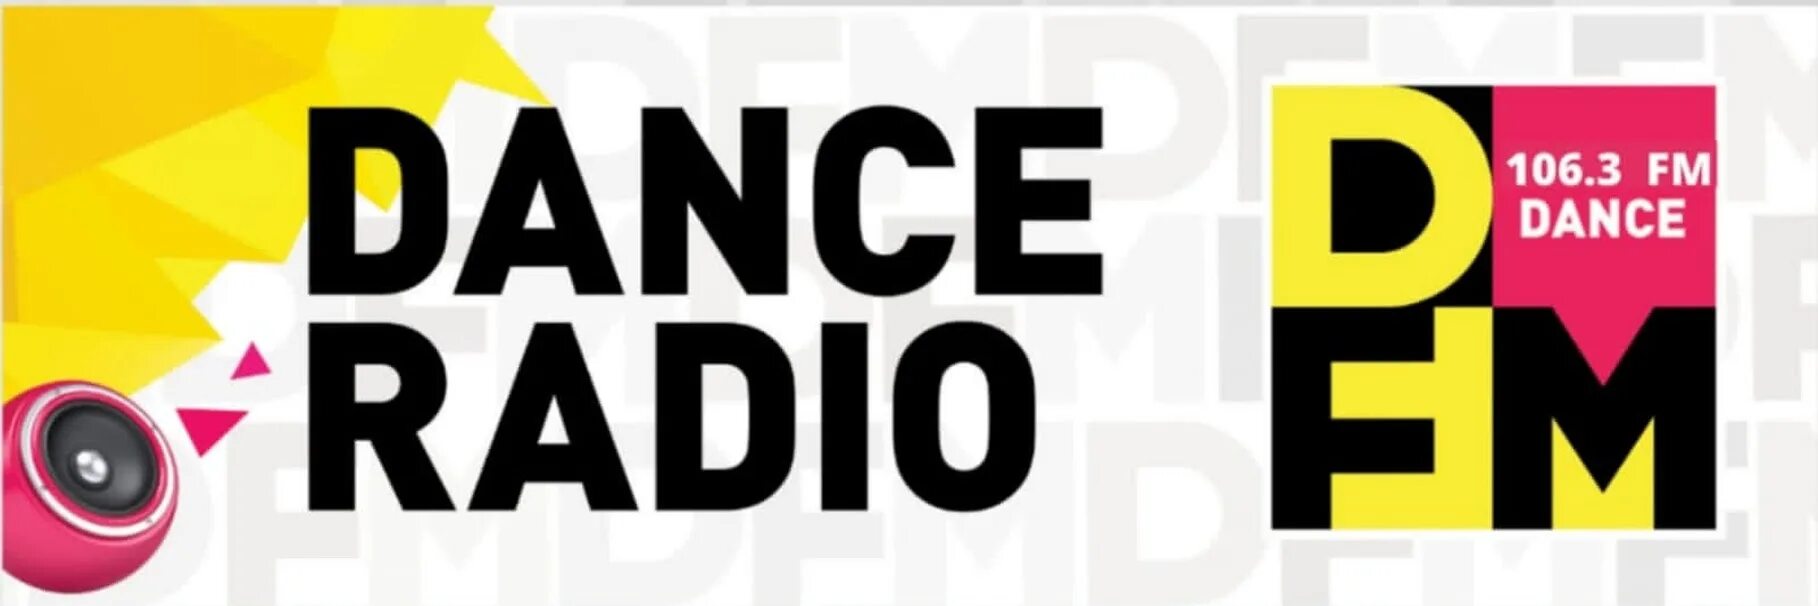 Сайт радиостанции DFM. DFM логотип. Логотипы радиостанций ди ФМ. DFM Dance Radio. Эфир радио ди фм